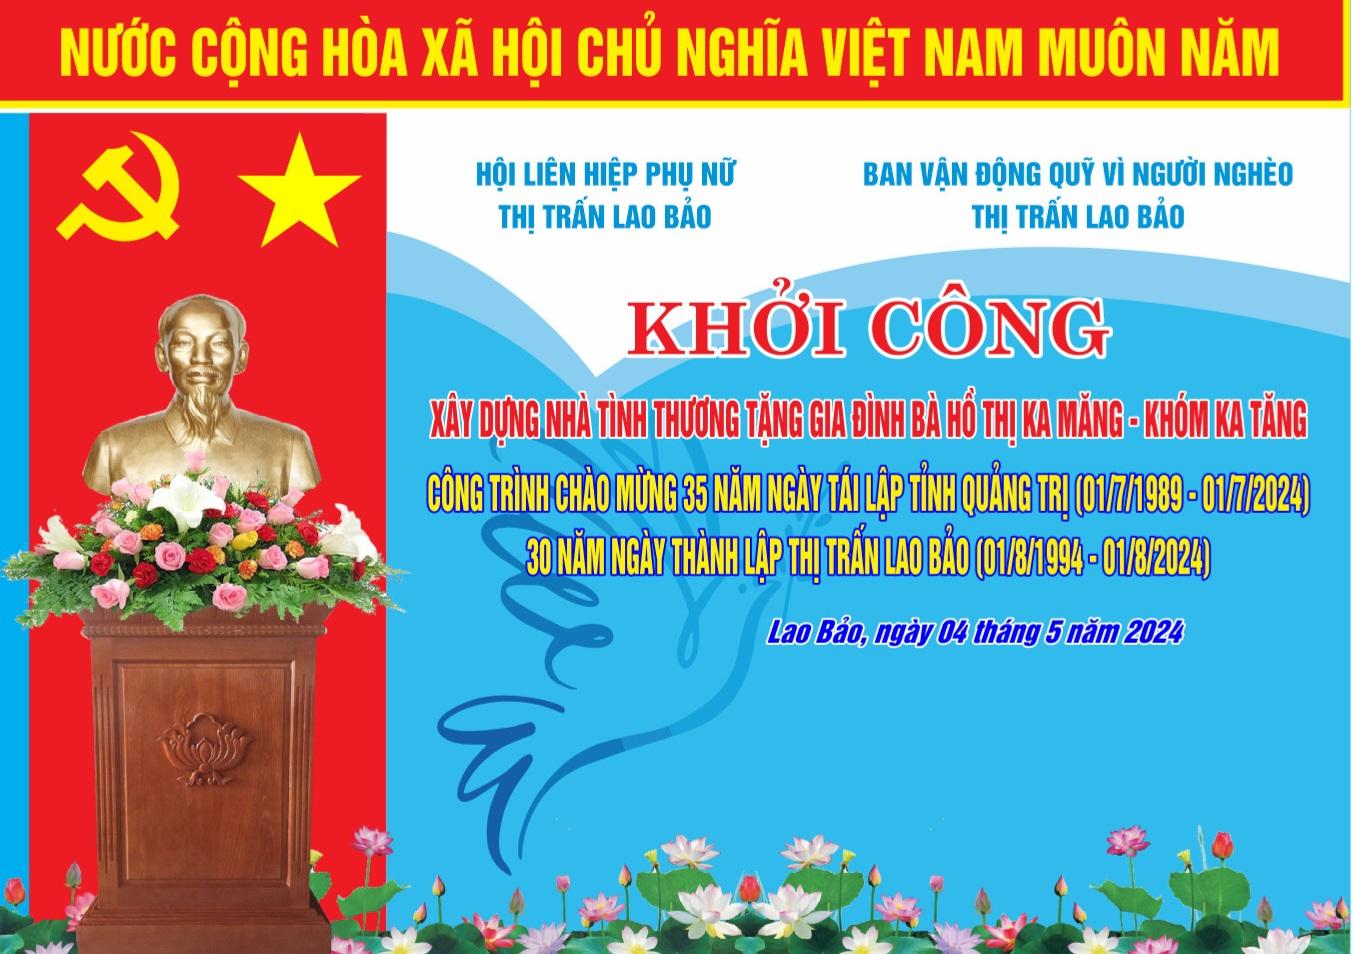 Khởi công xây dựng nhà tình thương chào mừng kỷ niệm 35 năm ngày tái lập tỉnh Quảng Trị (01/7/1989...